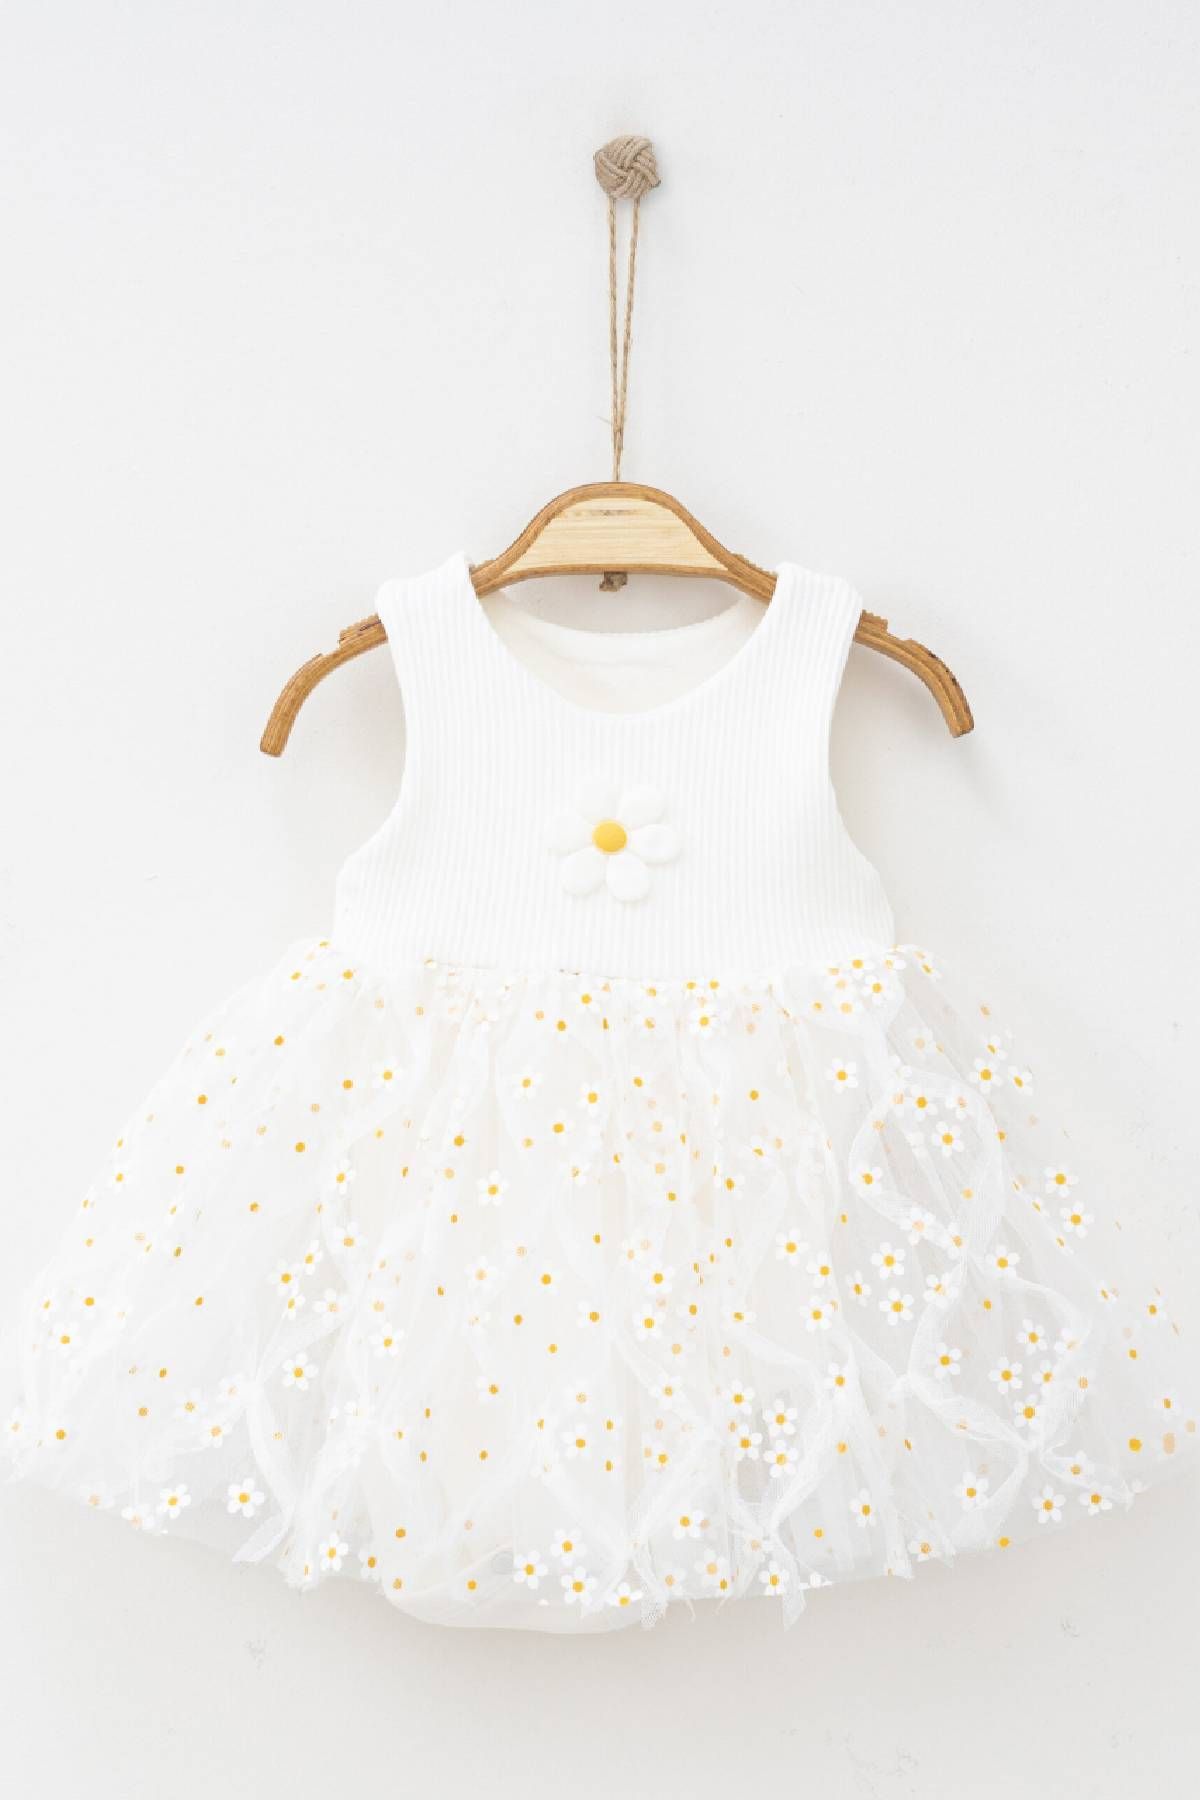 VERONA TARZ Kız Bebek Çıtçıtlı Alt Elbise Tek Parça Yazlık Bayramlık Yeni Sezon Çiçek Desenli